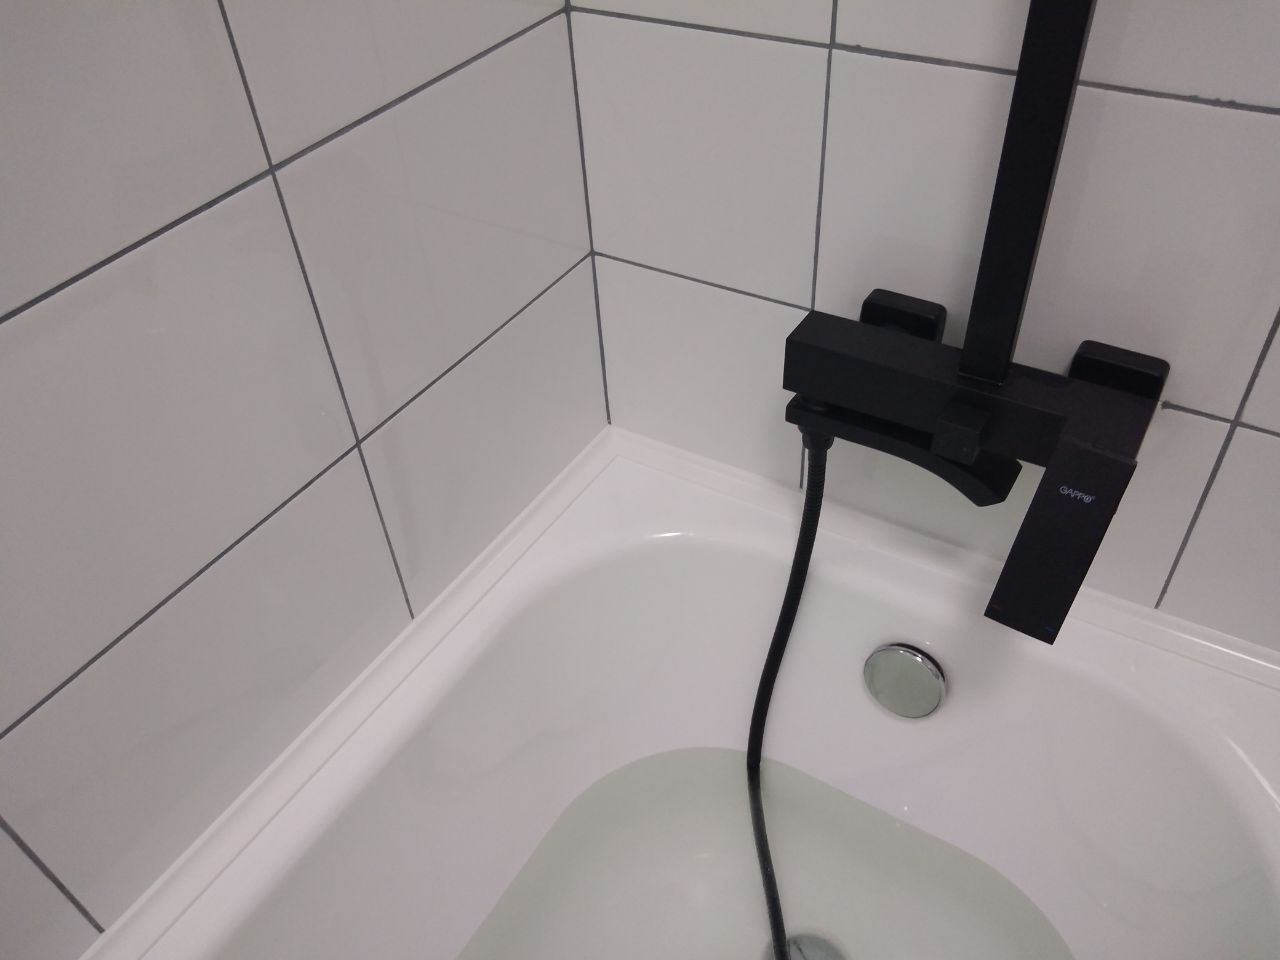 Комплект акриловых бордюров для ванной (3 шт) ГЛ24 интернет-магазин BNV